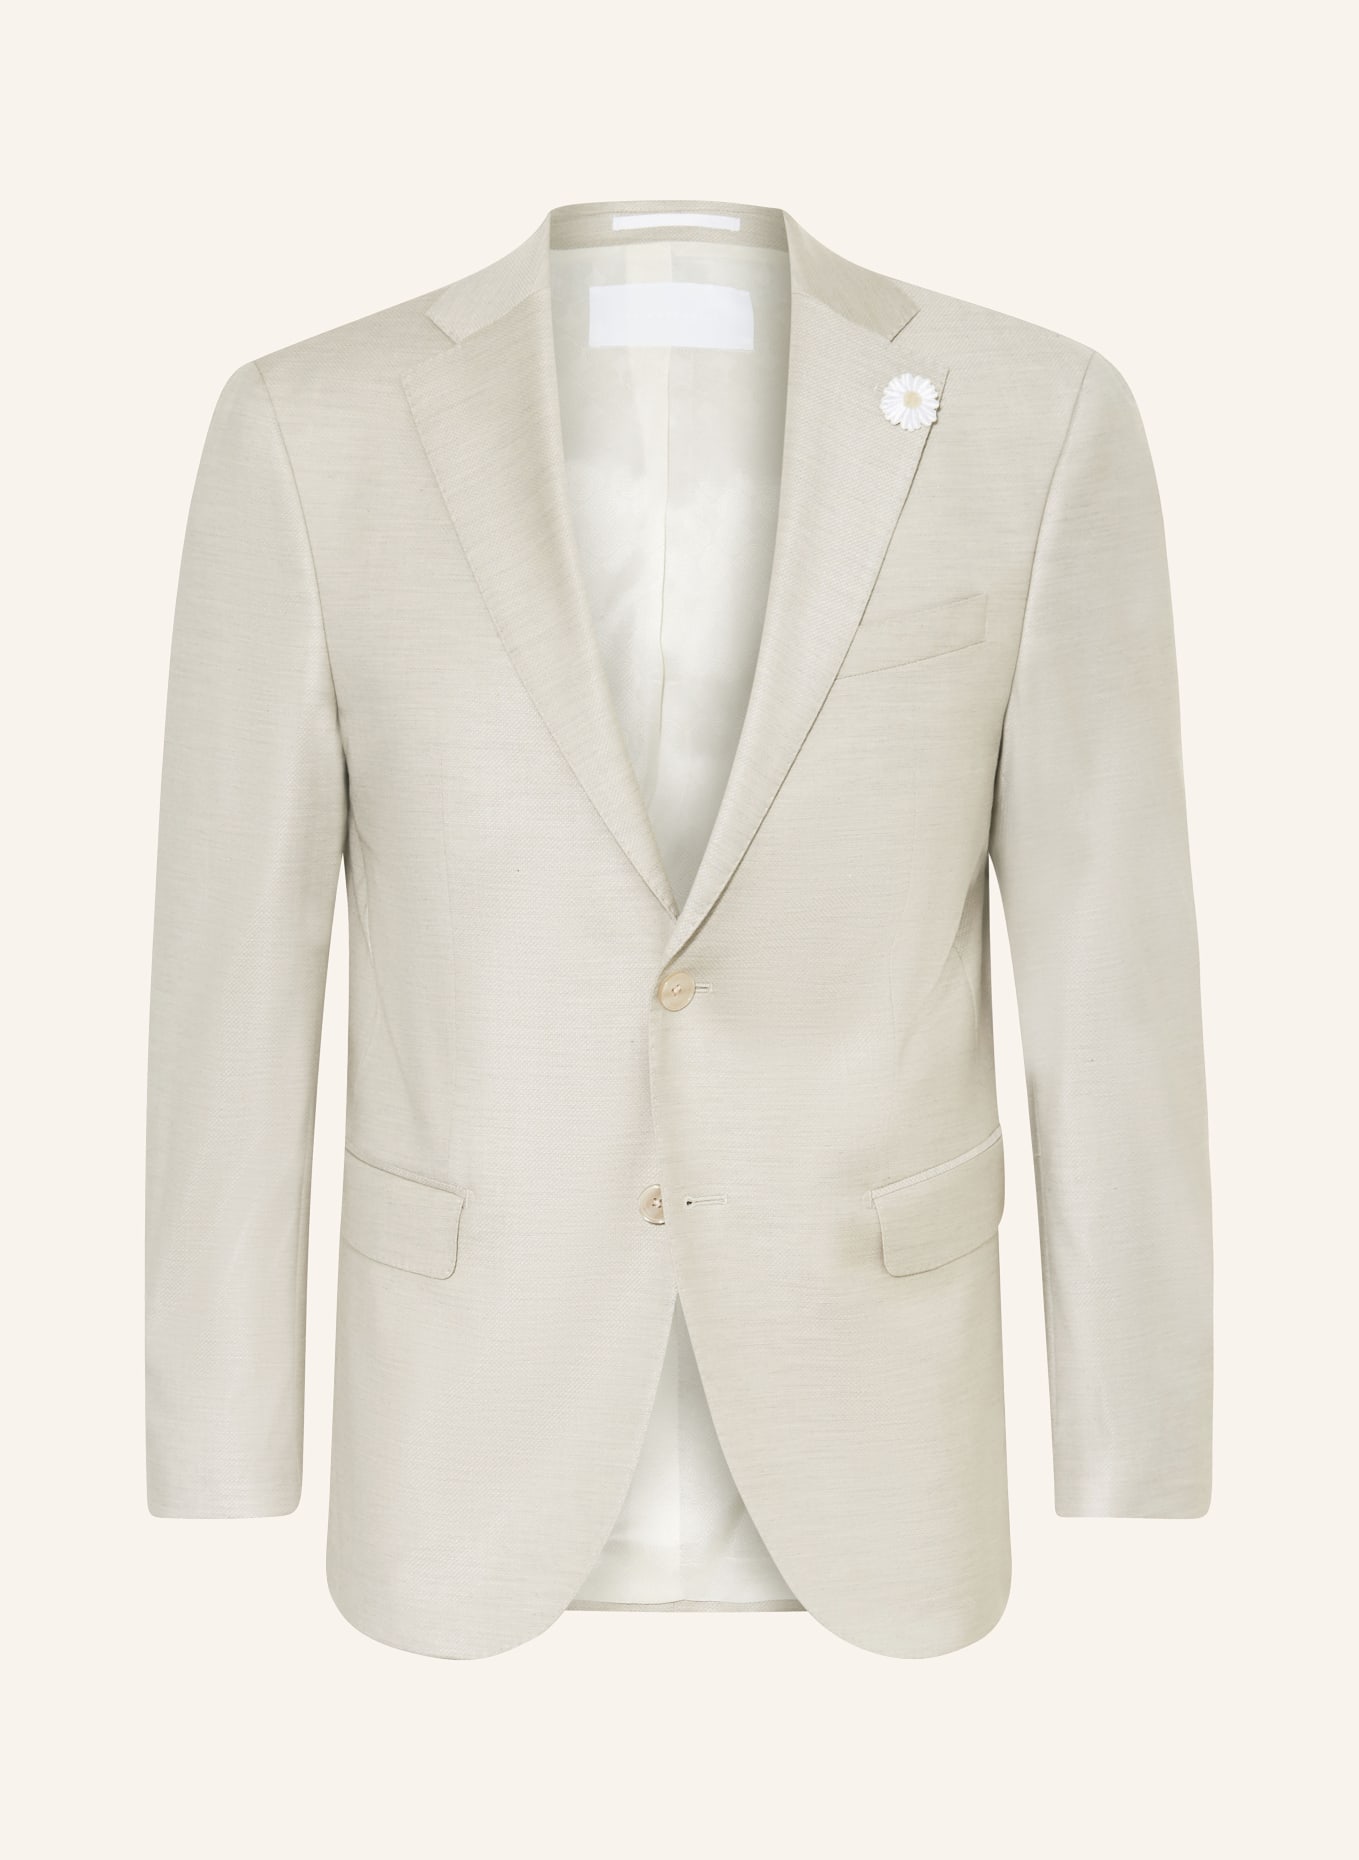 BALDESSARINI Suit jacket Slim Fit, Color: 8920 Irish Cream Pattern (Image 1)